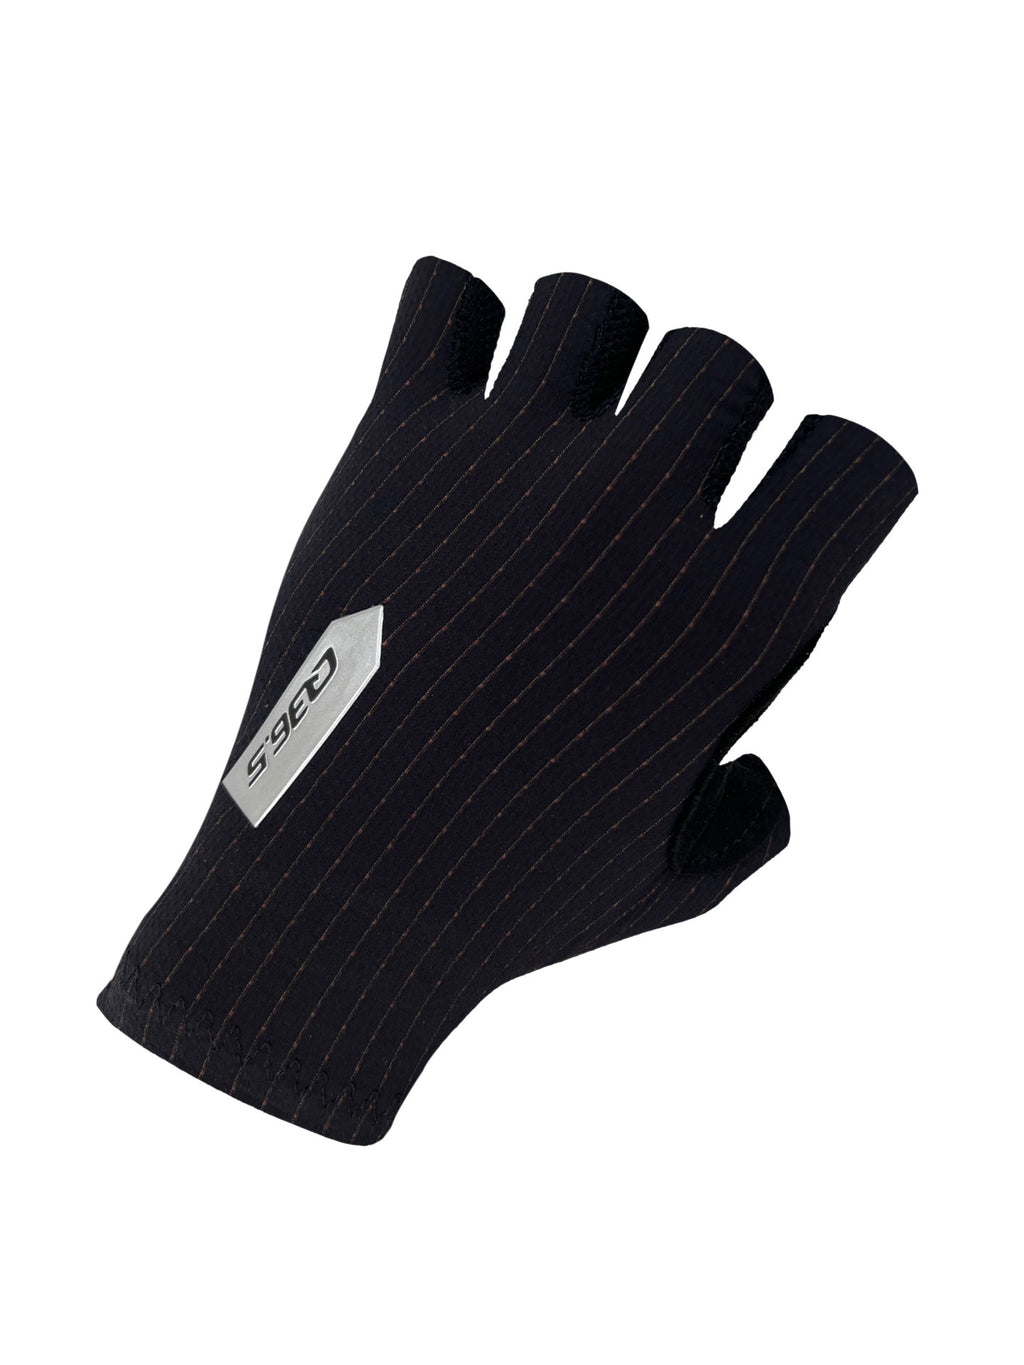 Q36.5 Pinstripe Summer Gloves, black, Einzelstück in XS und M, SALE